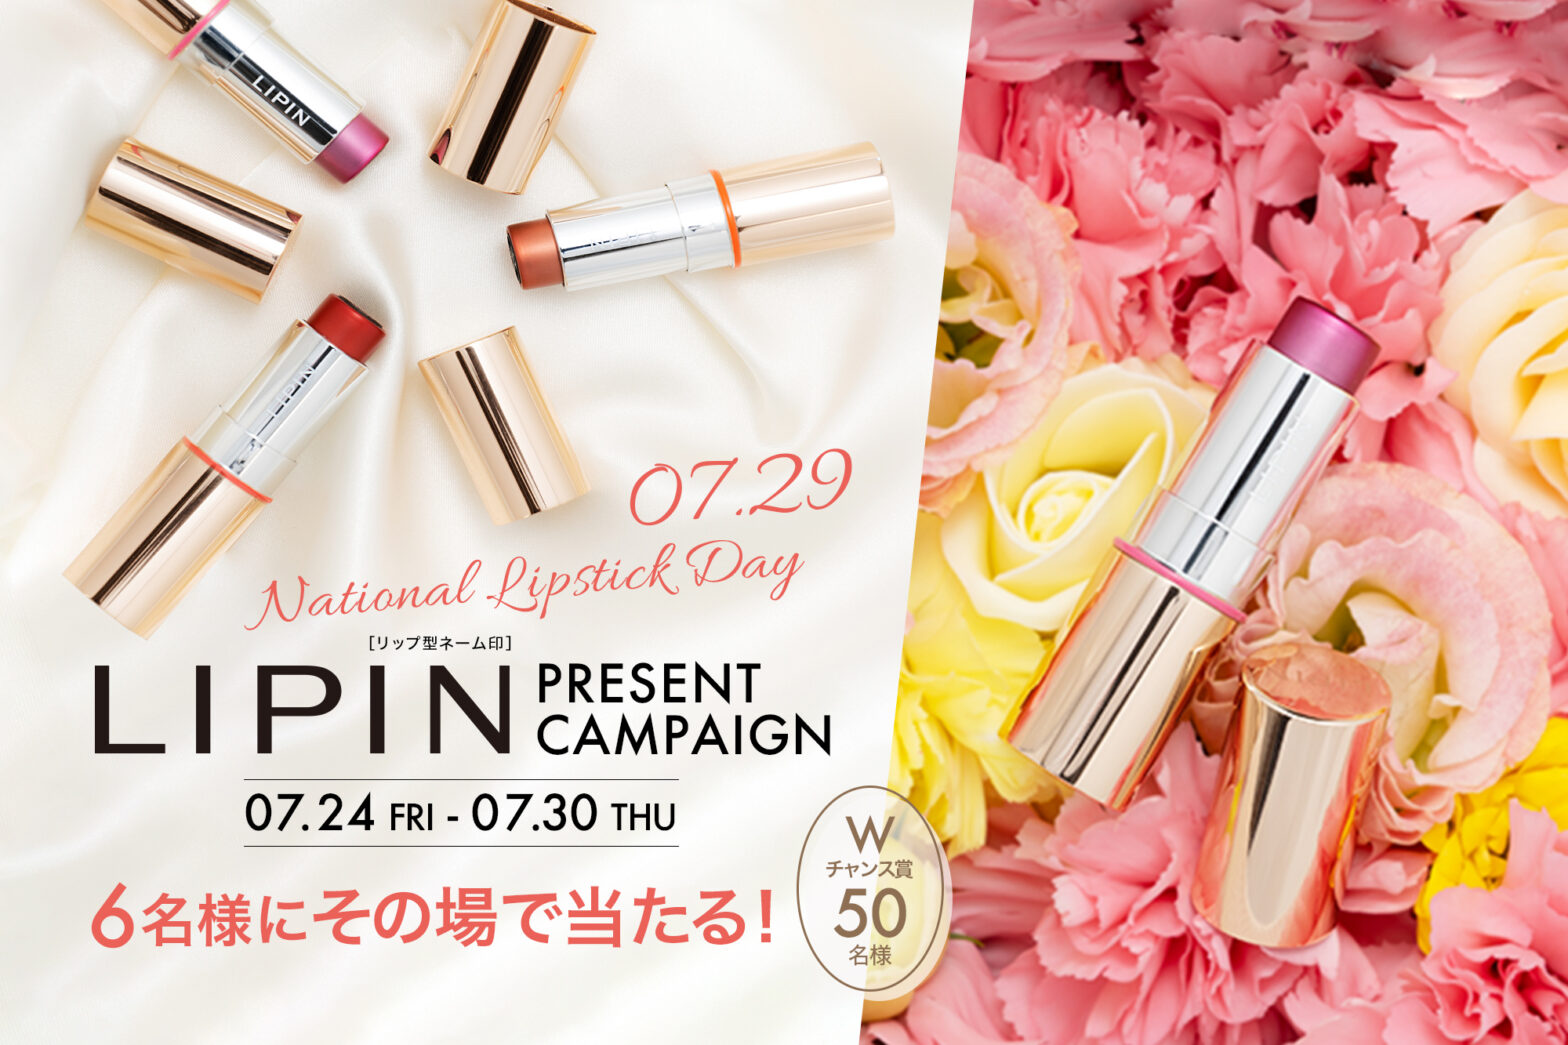 National Lipstick Day LIPINプレゼントキャンペーン